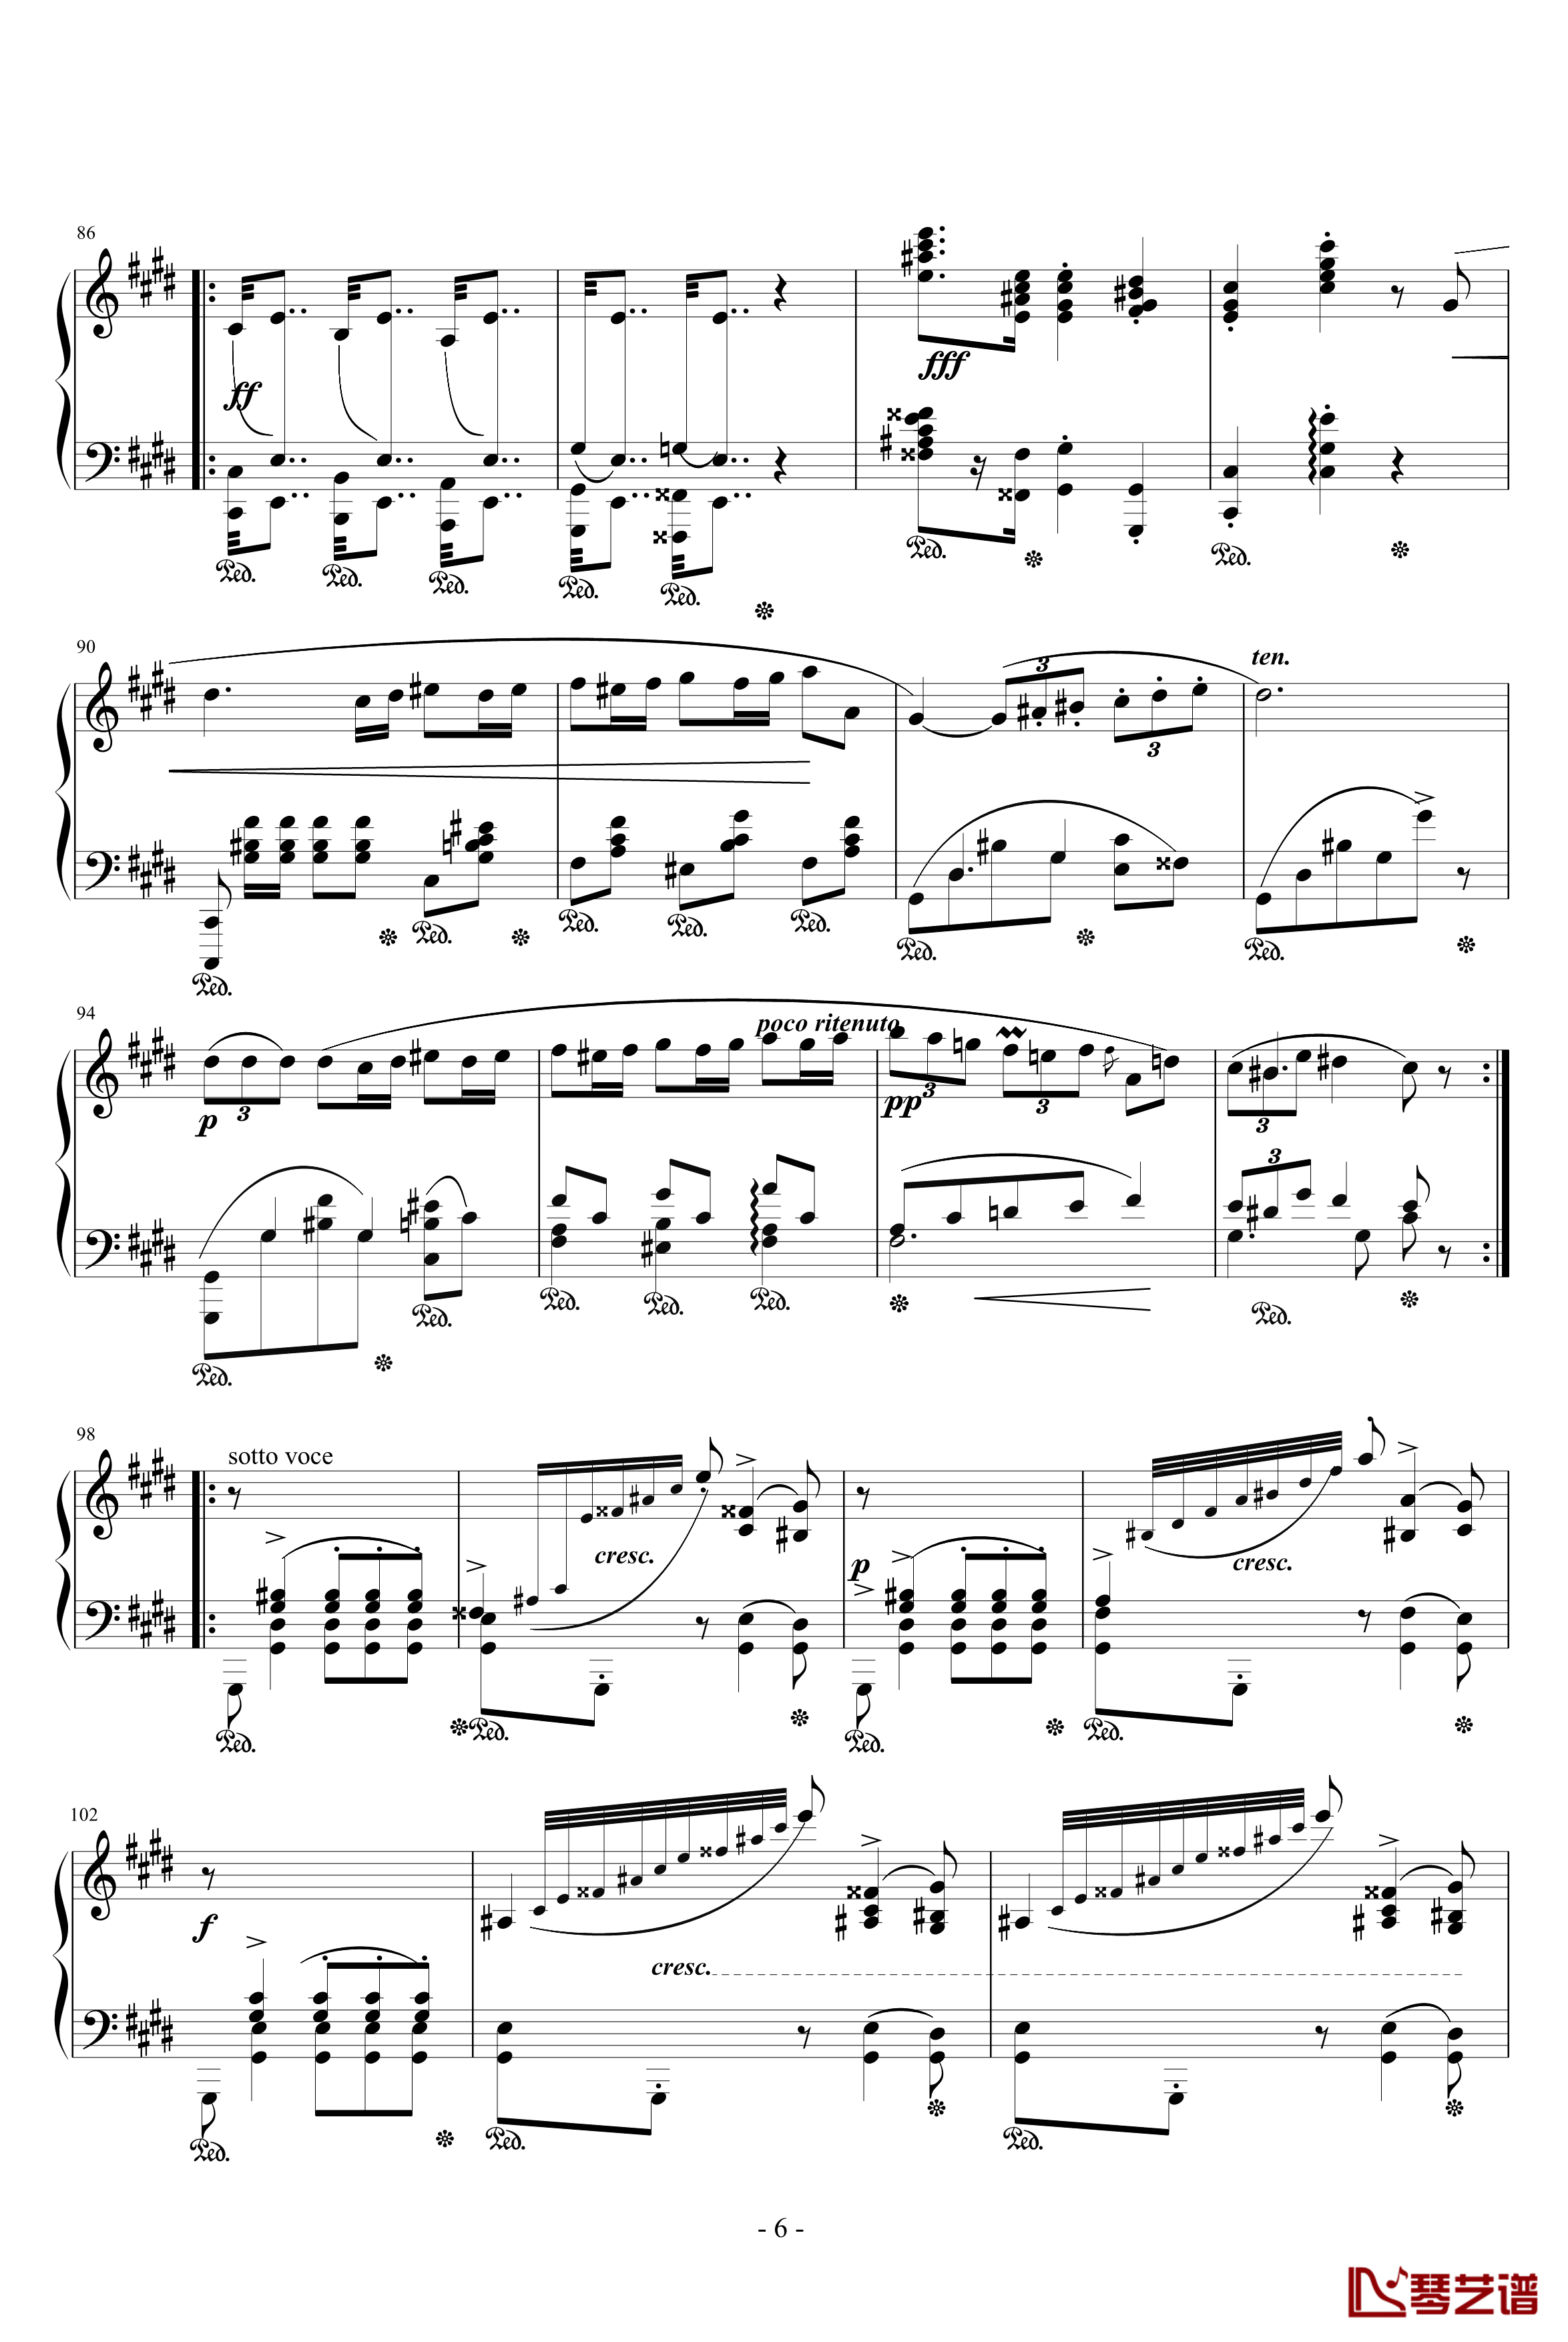 升c小调波罗乃兹舞曲钢琴谱-肖邦-chopin6